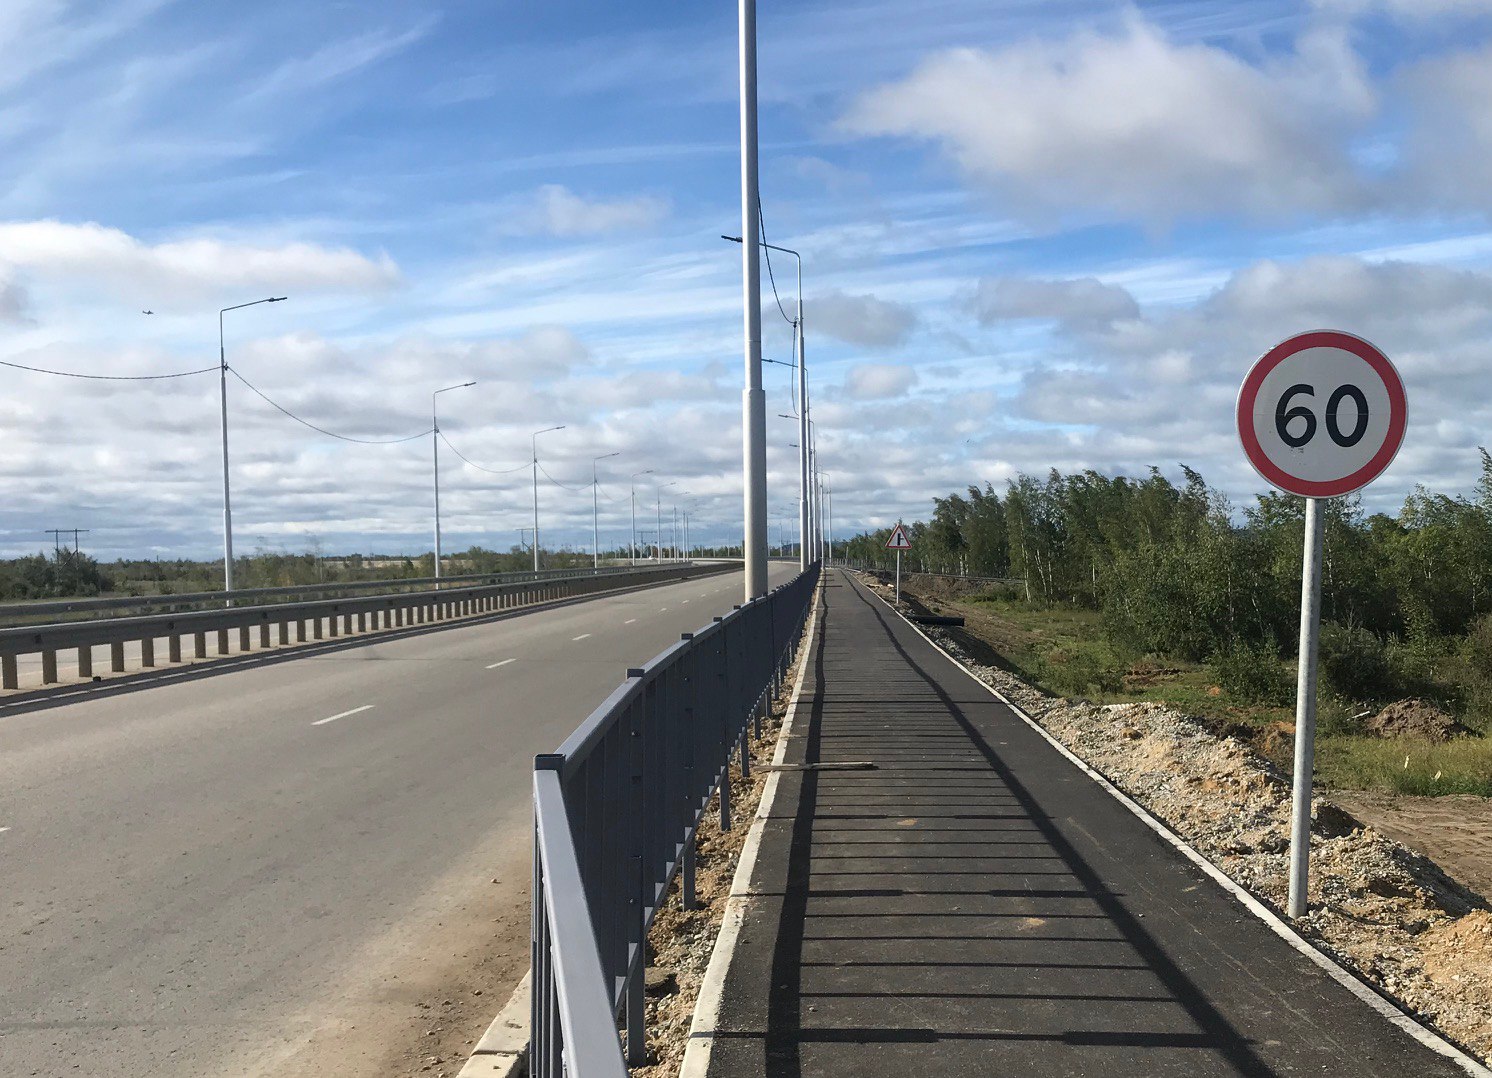 Участок автодороги «Нам» в Якутии откроют досрочно после масштабной реконструкции